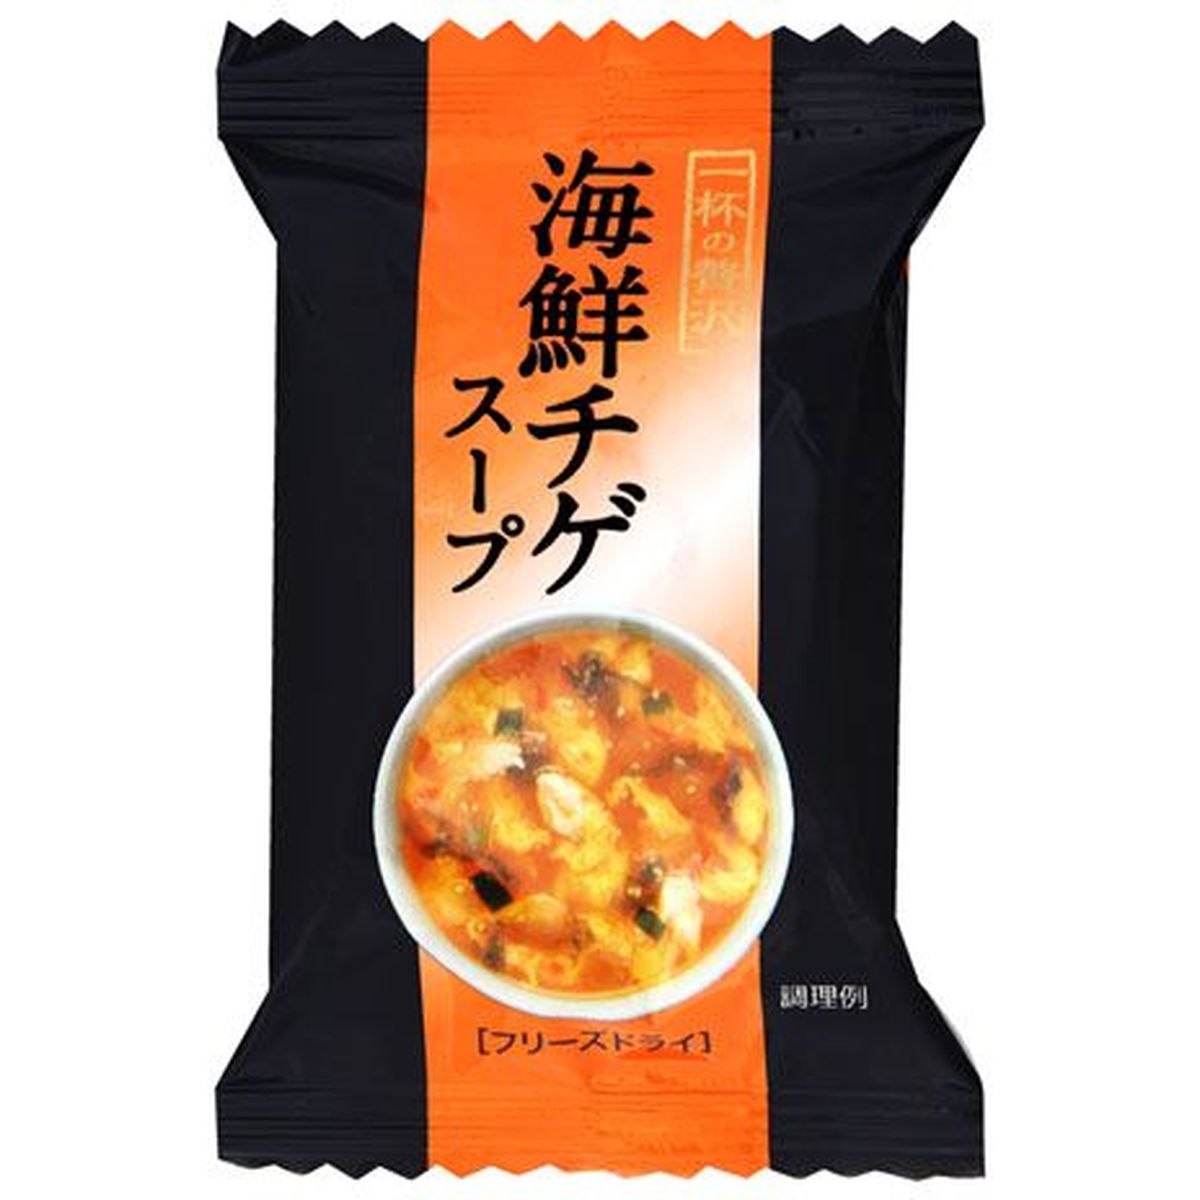 【10個入リ】キリン 一杯ノ贅沢 海鮮チゲスープ 7.5g